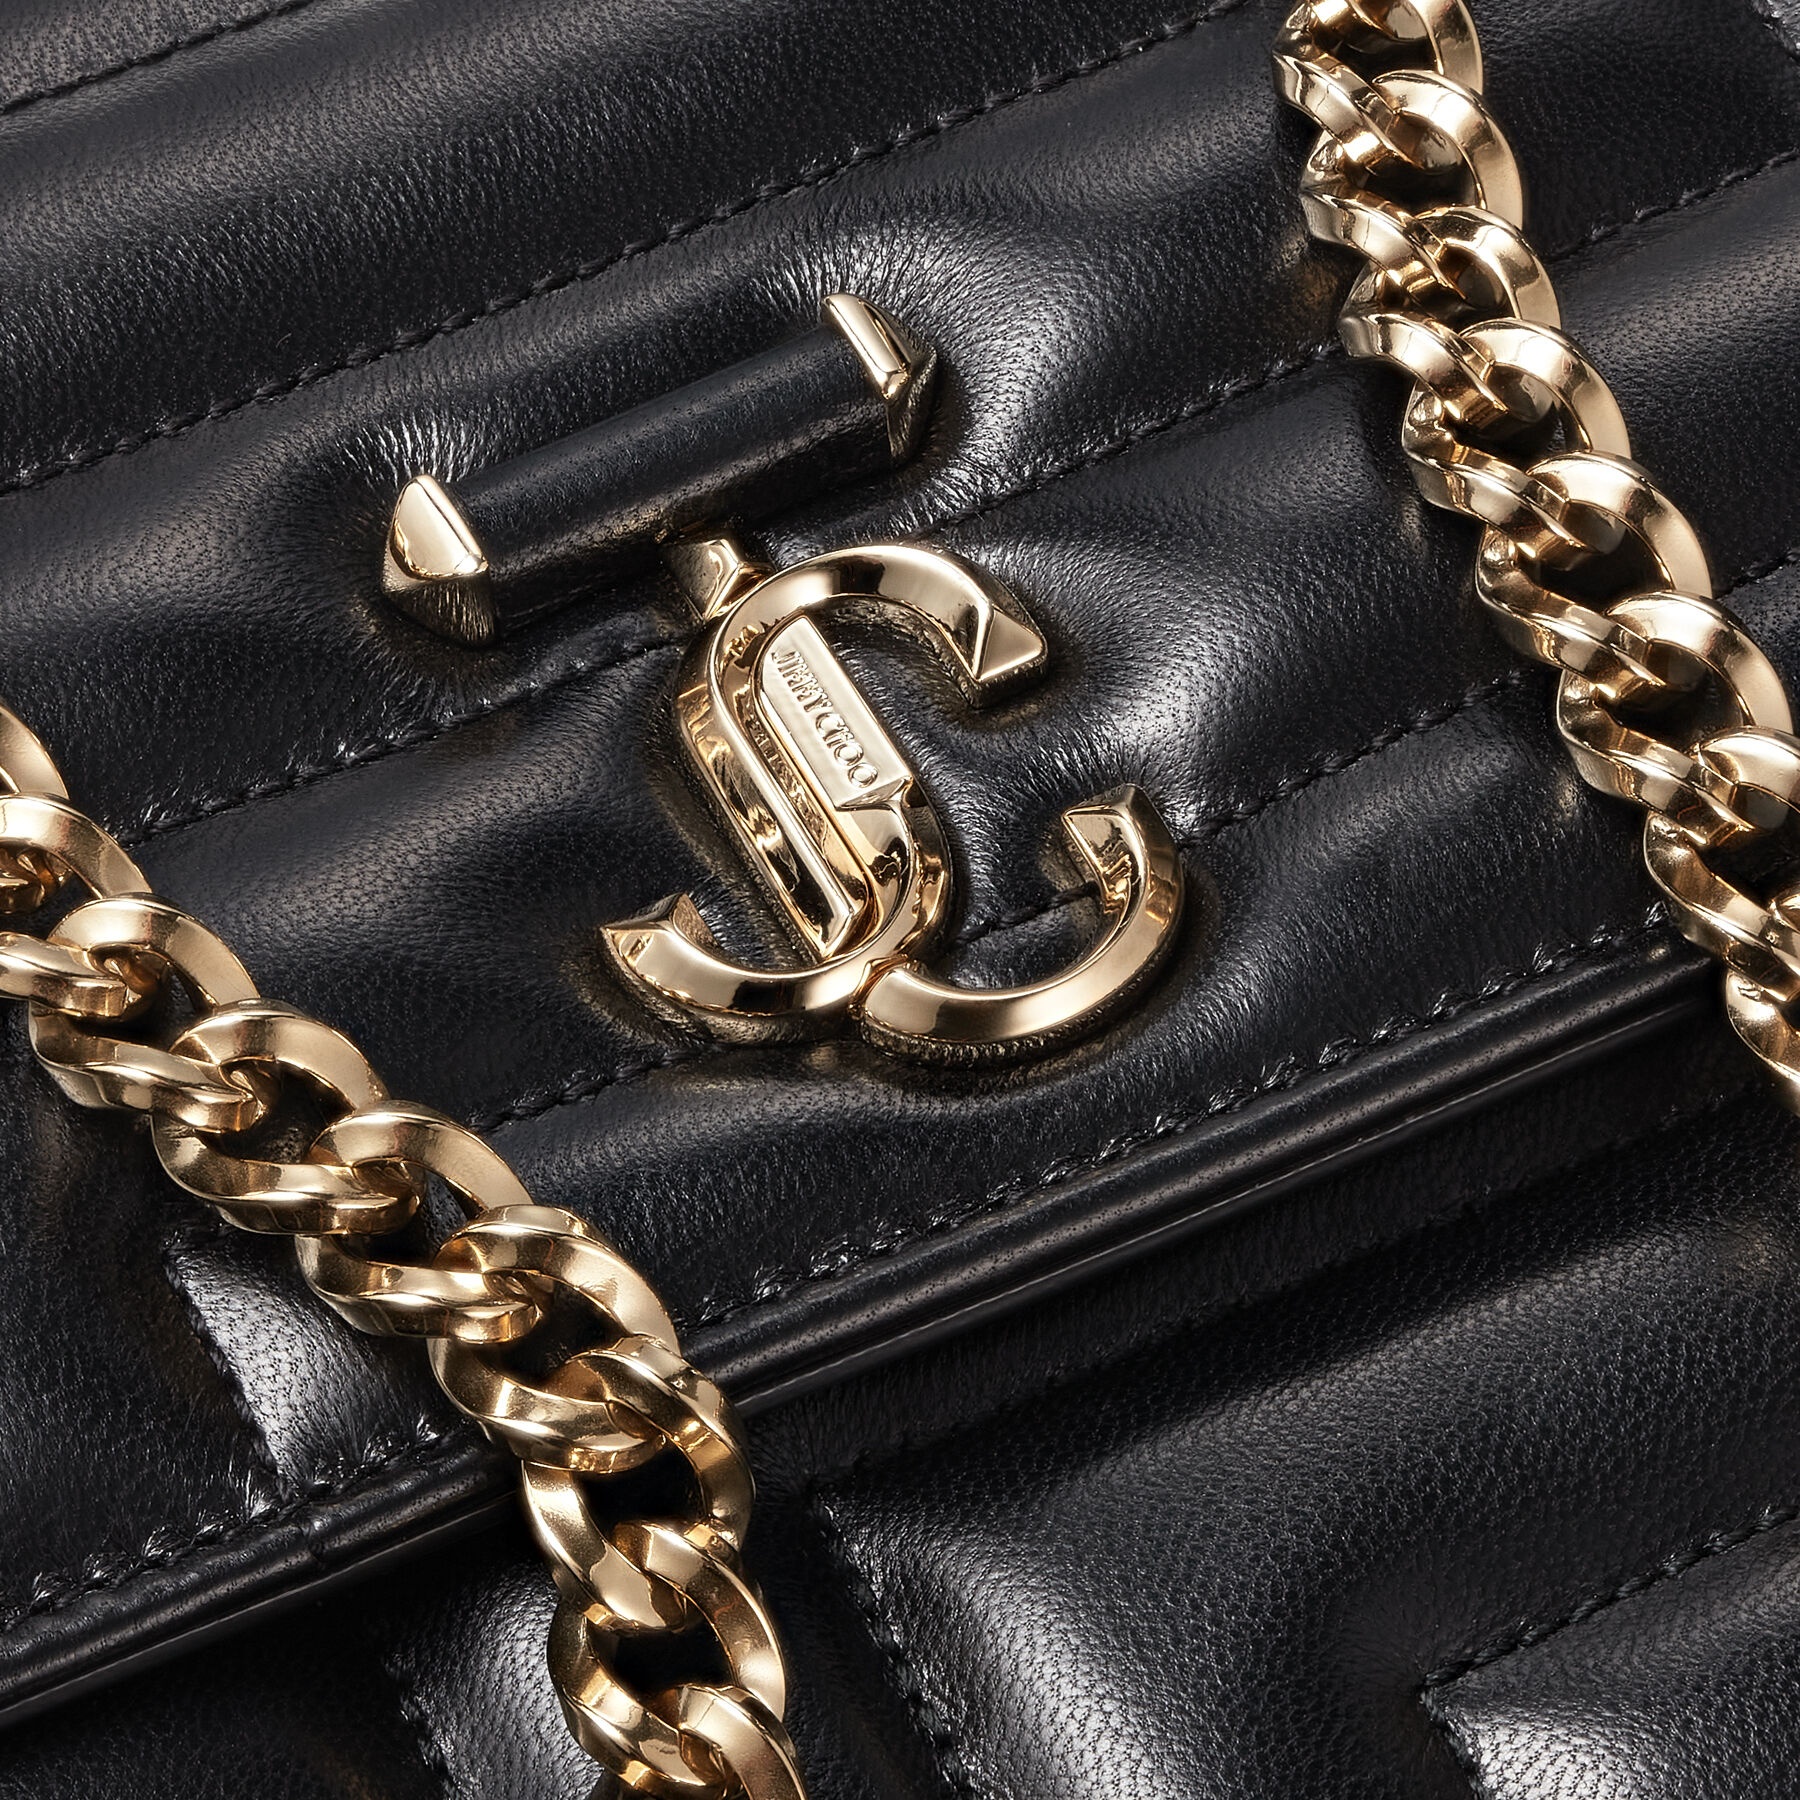 Varenne Avenue Quad
Black Avenue Nappa Leather Bag with Light Gold JC Emblem - 6